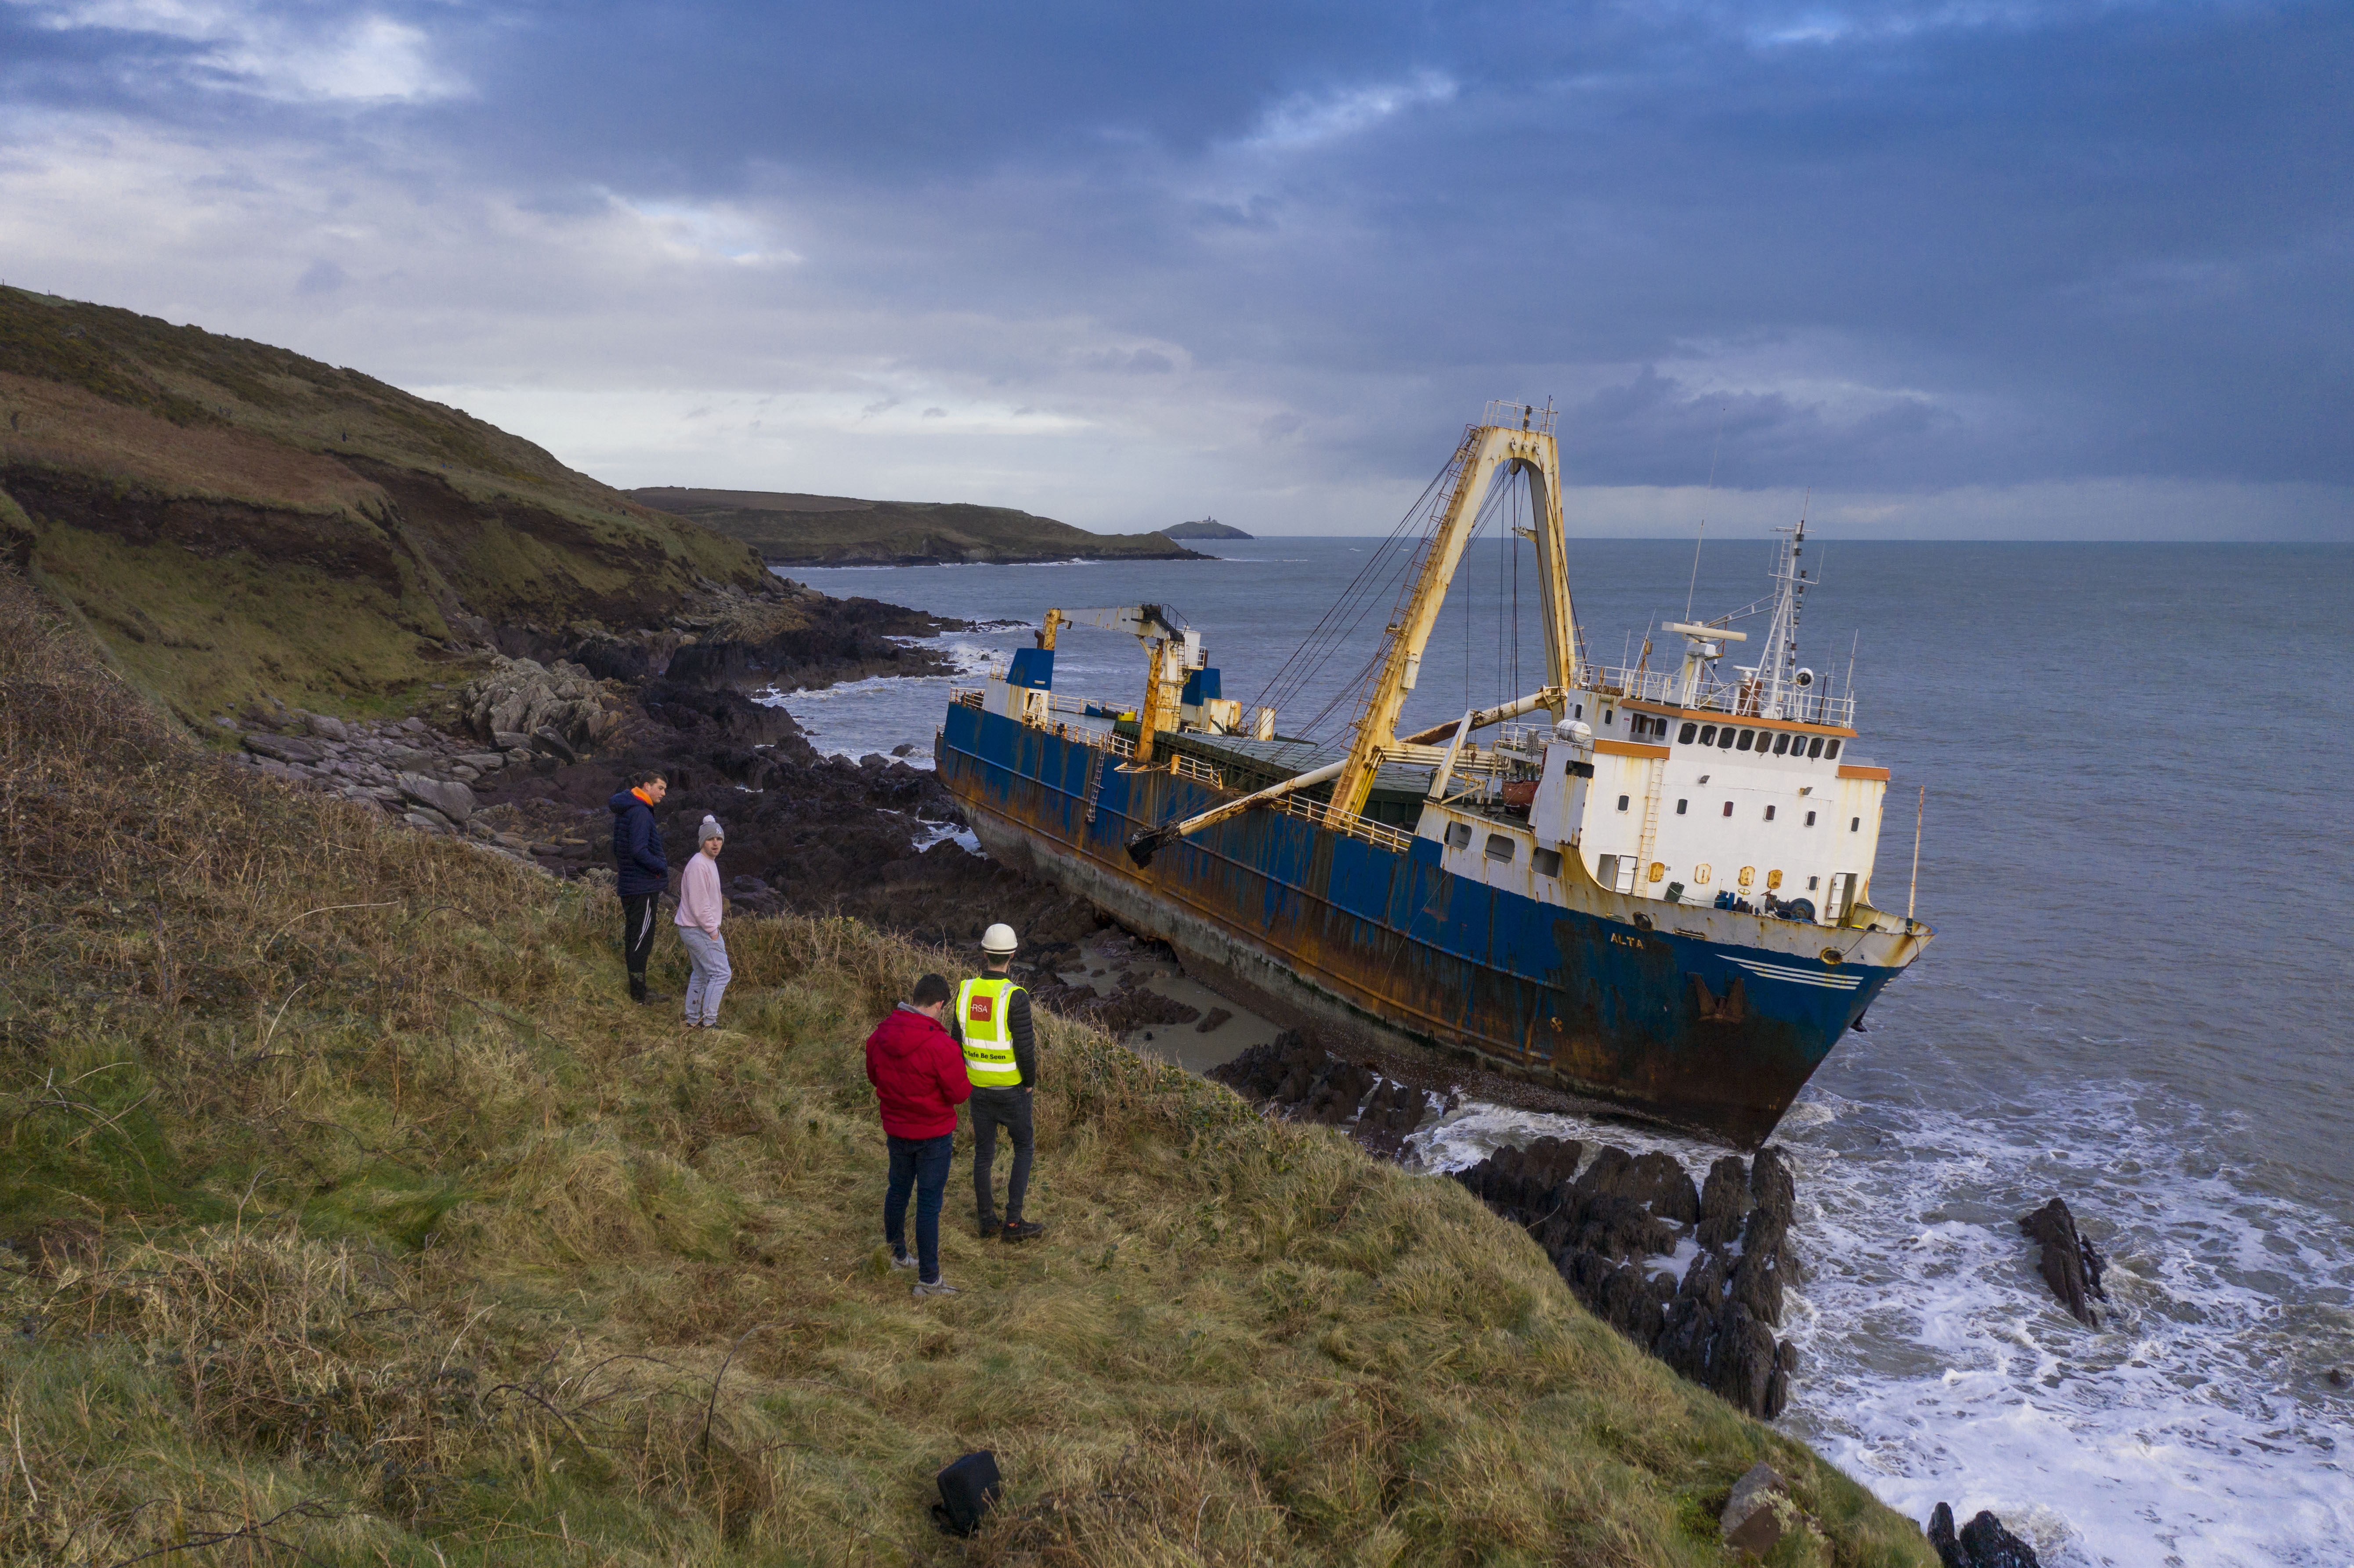 Jelentkezett az ír hatóságoknál a partra sodródott kísértethajó, az MV Alta tulajdonosa